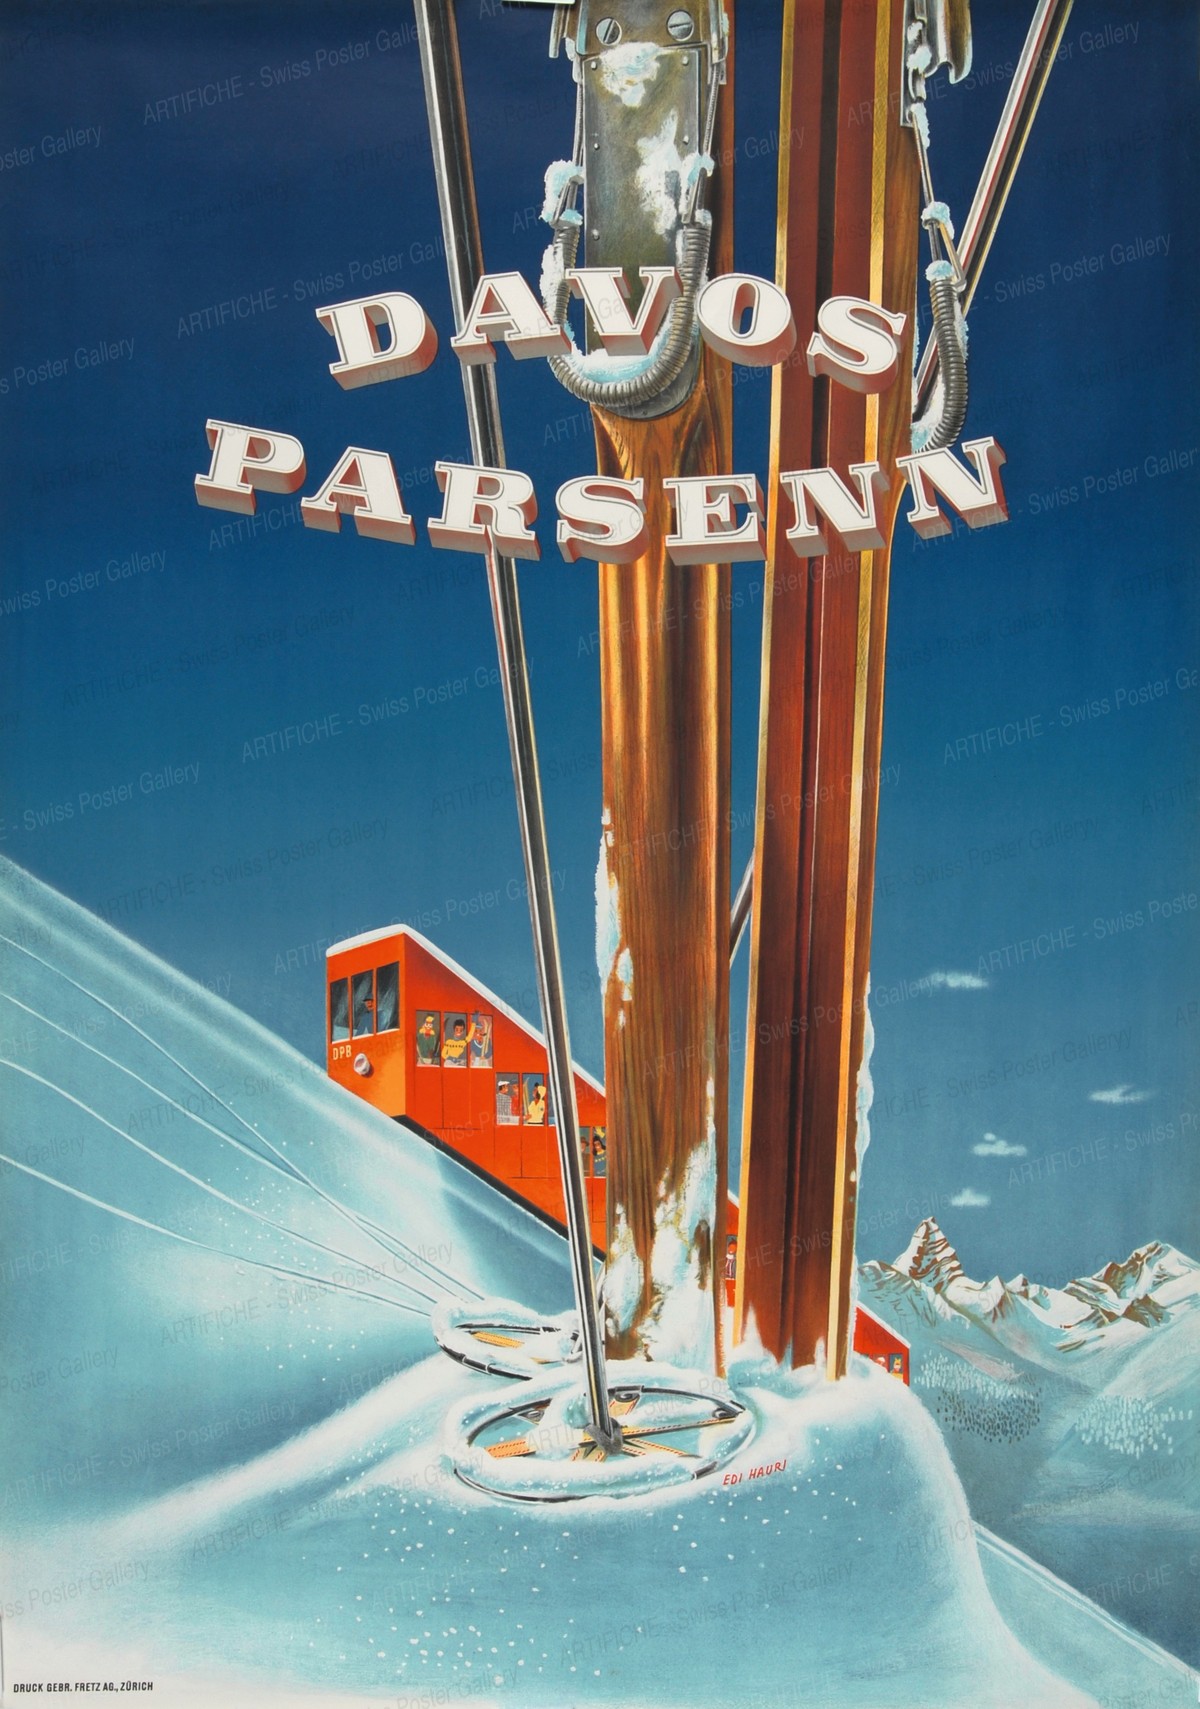 Davos – Parsenn – Switzerland – Suisse, Edi Hauri